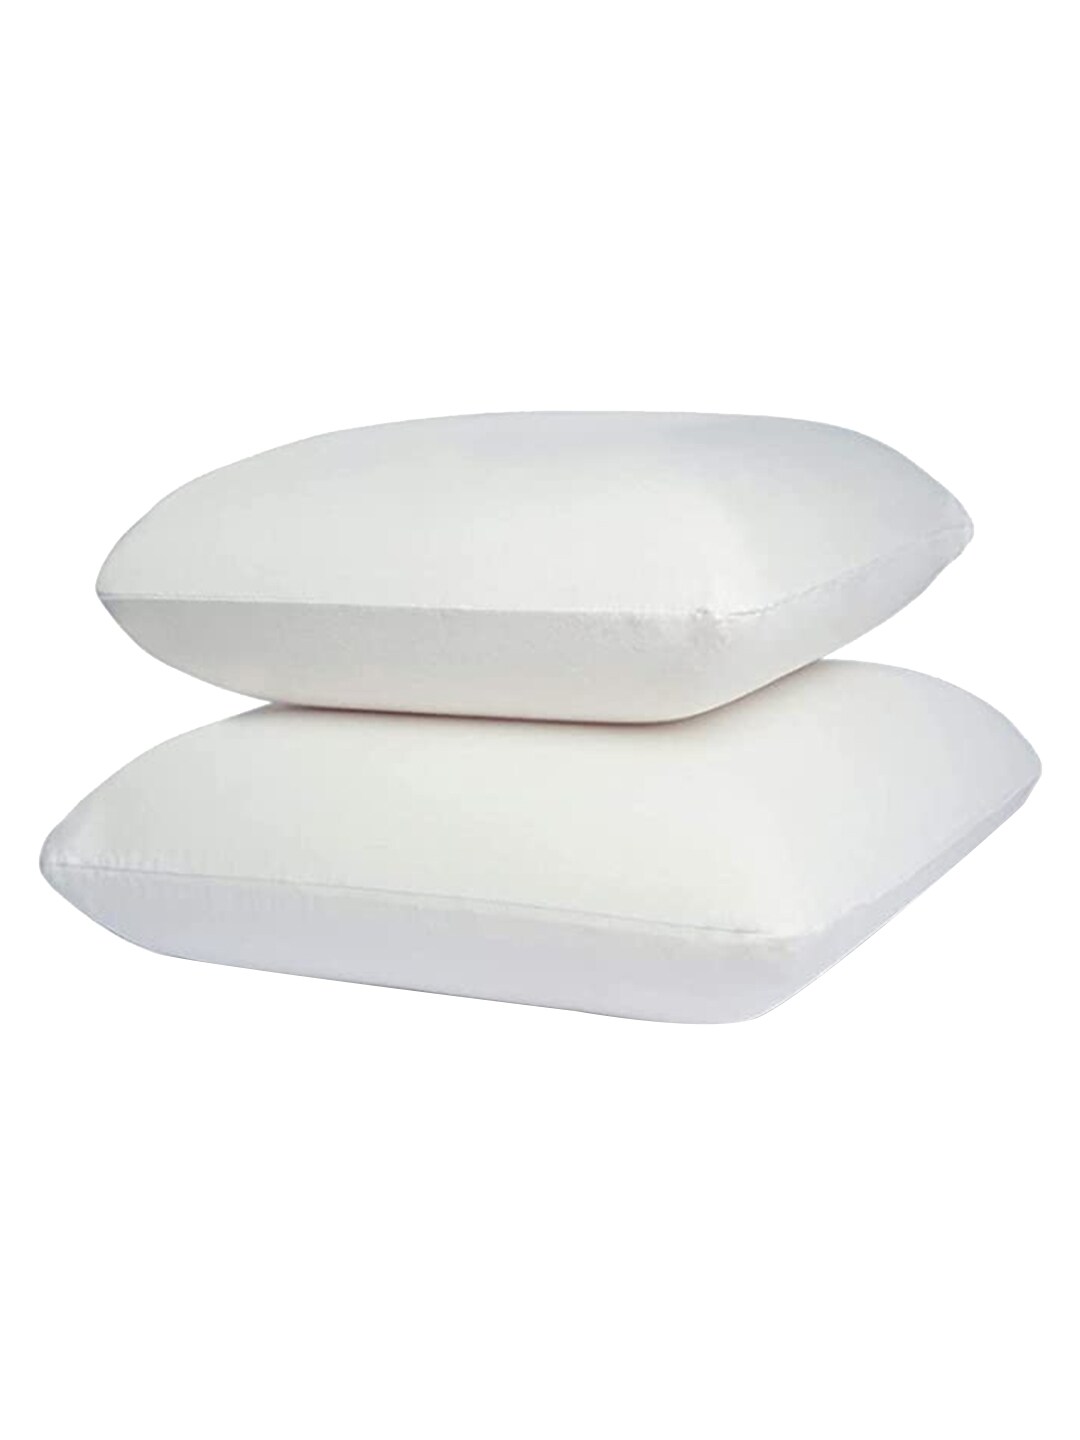 Sleepsia Set of 4 White Solid Cotton Pillows Price in India